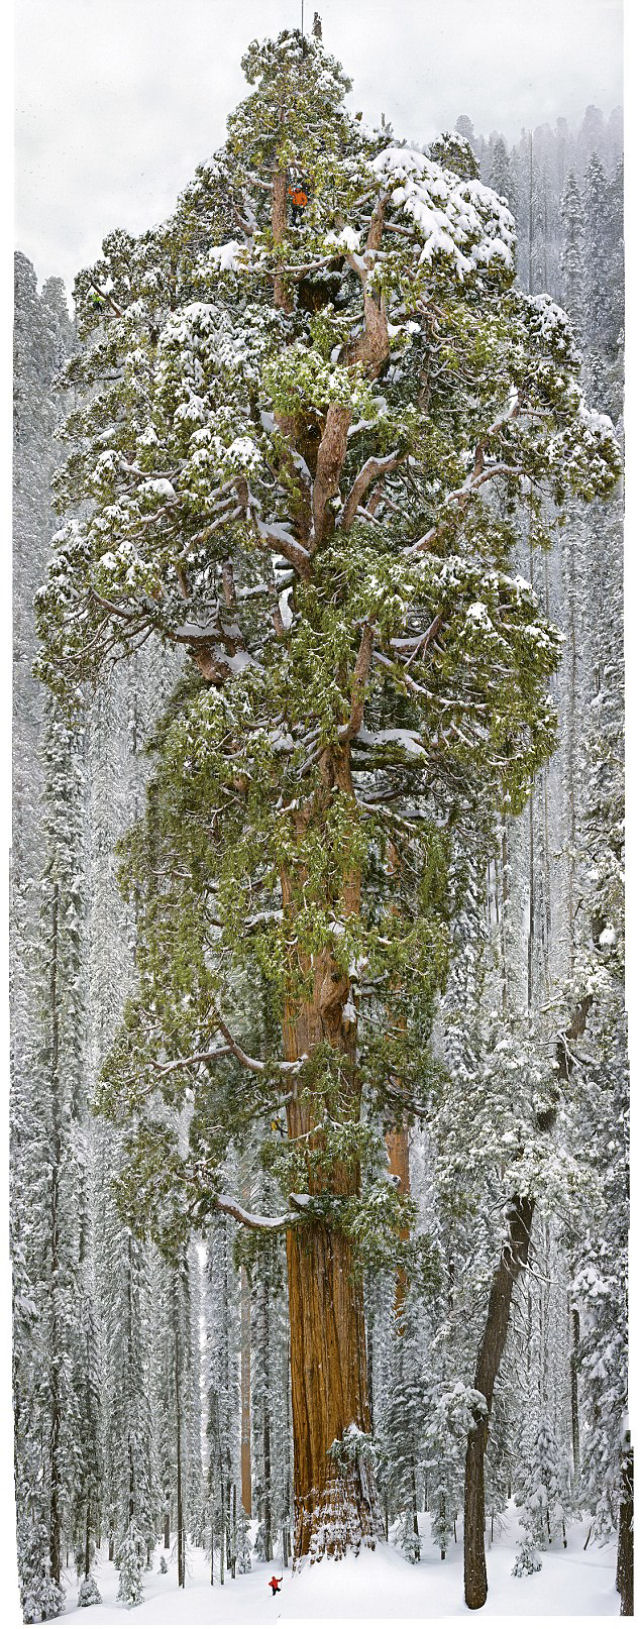 Esta árvore nunca havia sido fotografa em uma imagem única. Até agora